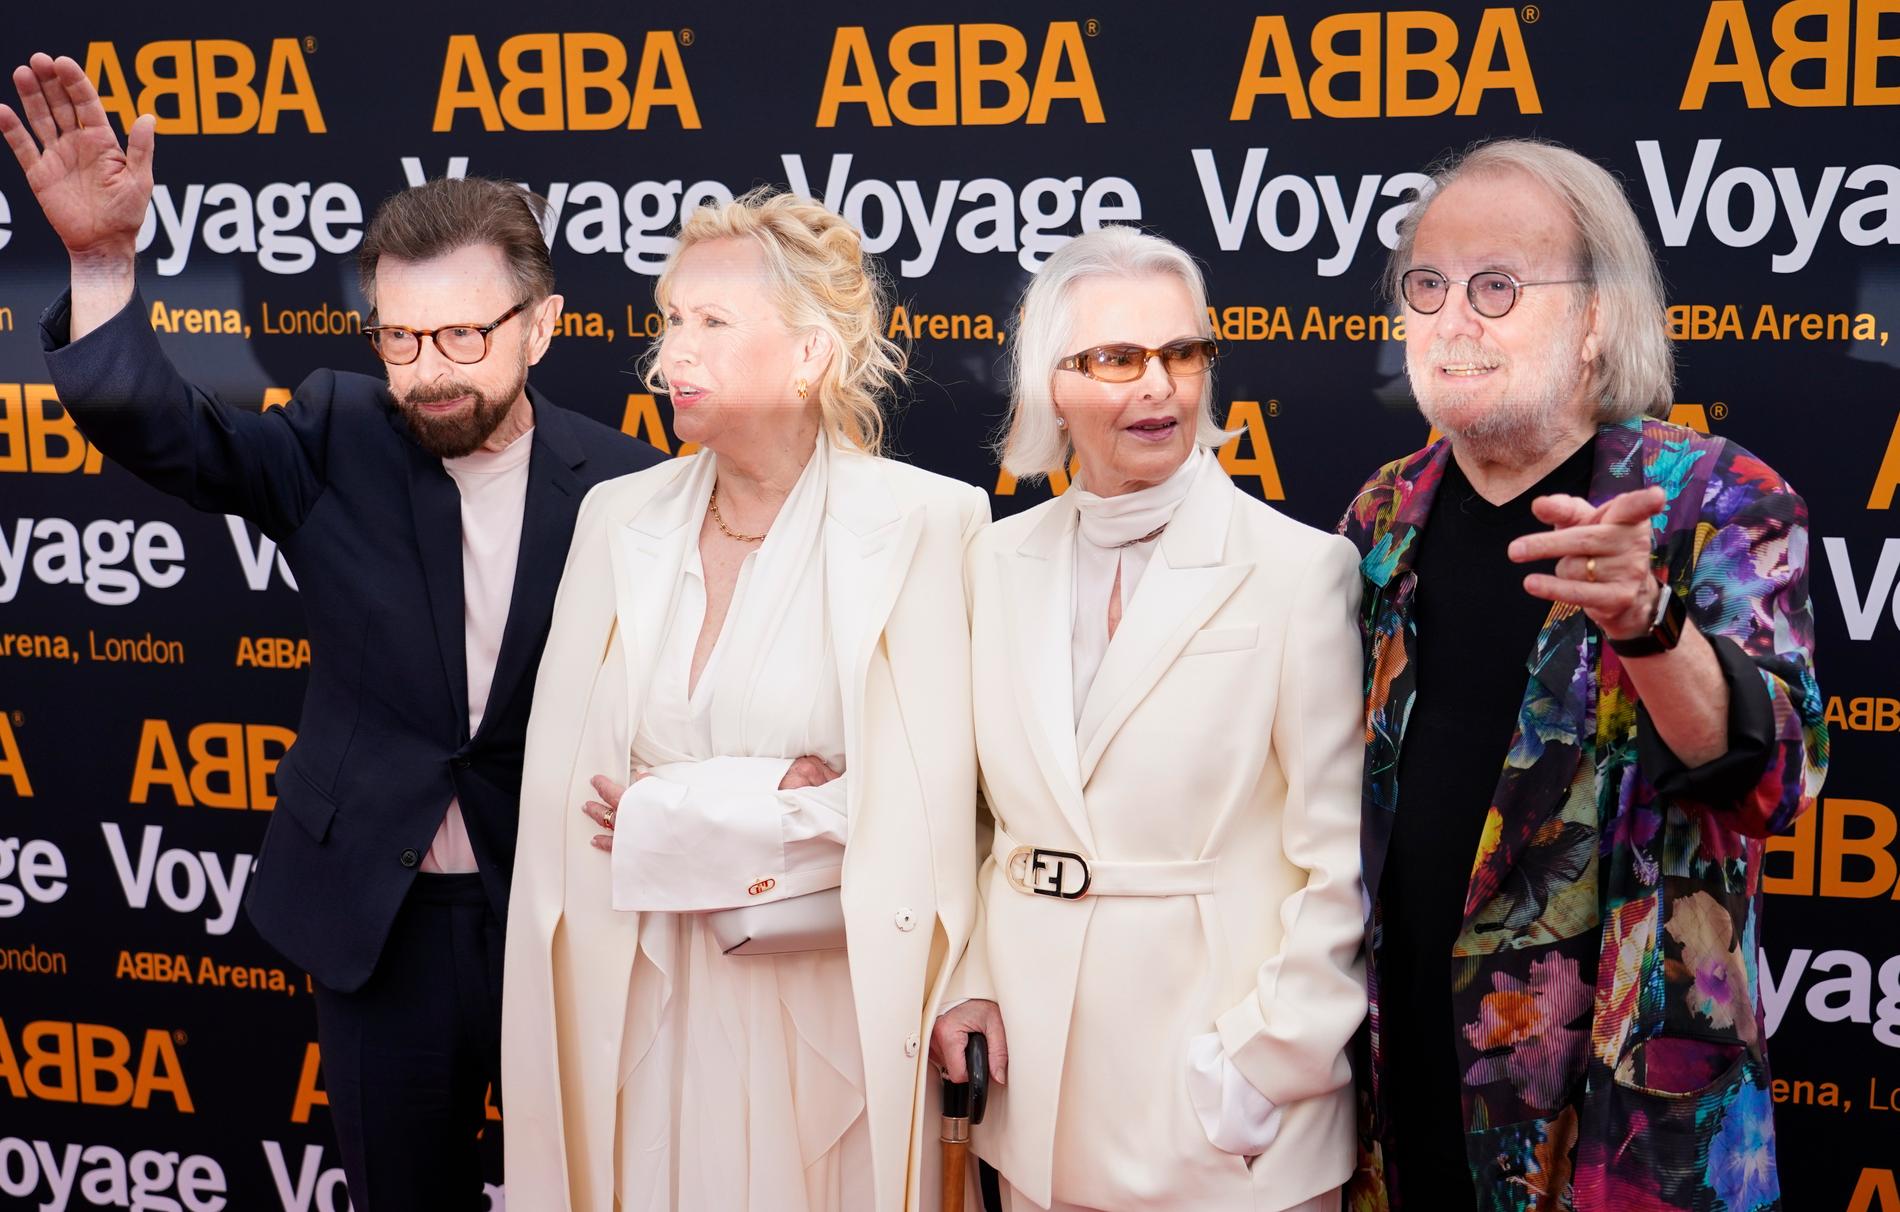 I maj 2022 hade den digitala föreställningen "Abba voyage" premiär i London och gruppens medlemmar fanns på plats för att se yngre versioner av sig själva som avatarer. Arkivbild.